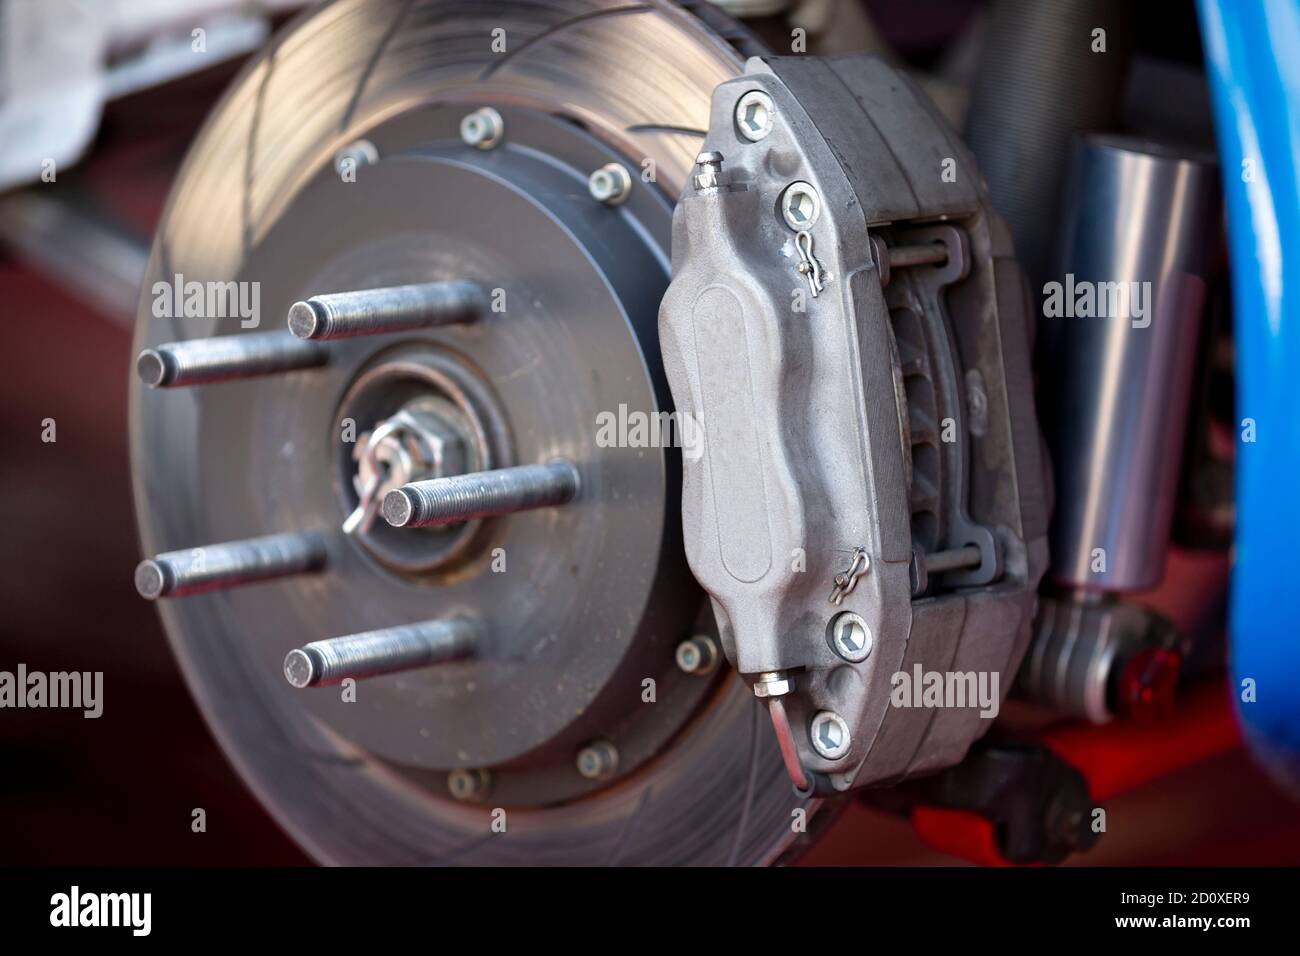 Étrier de frein haute performance sur freins à disque avec plaquettes de  frein d'une voiture. Pas de pneu Photo Stock - Alamy